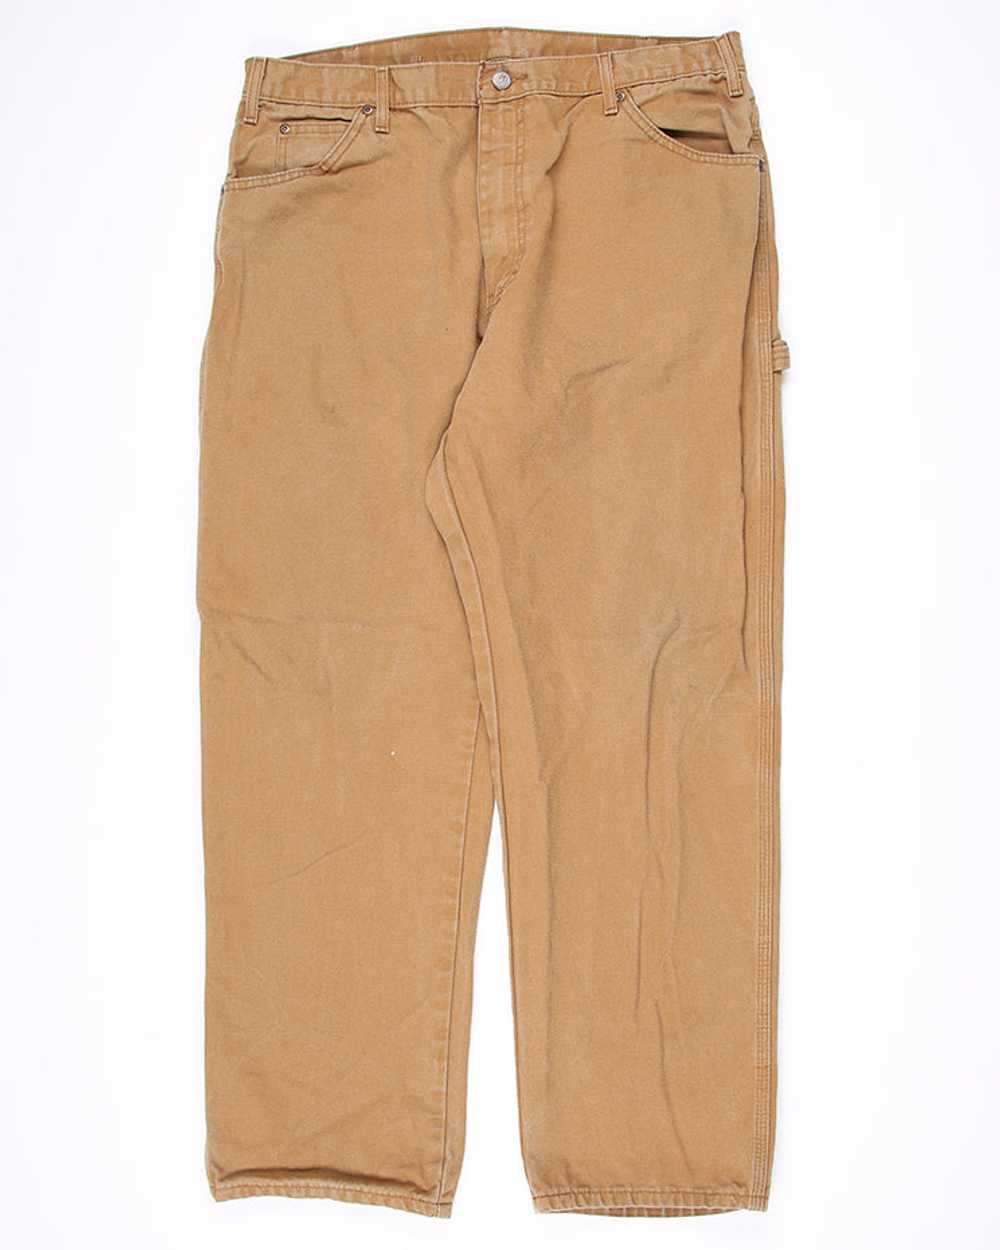 Vintage Dickies workwear jeans - W34 L30 - image 2